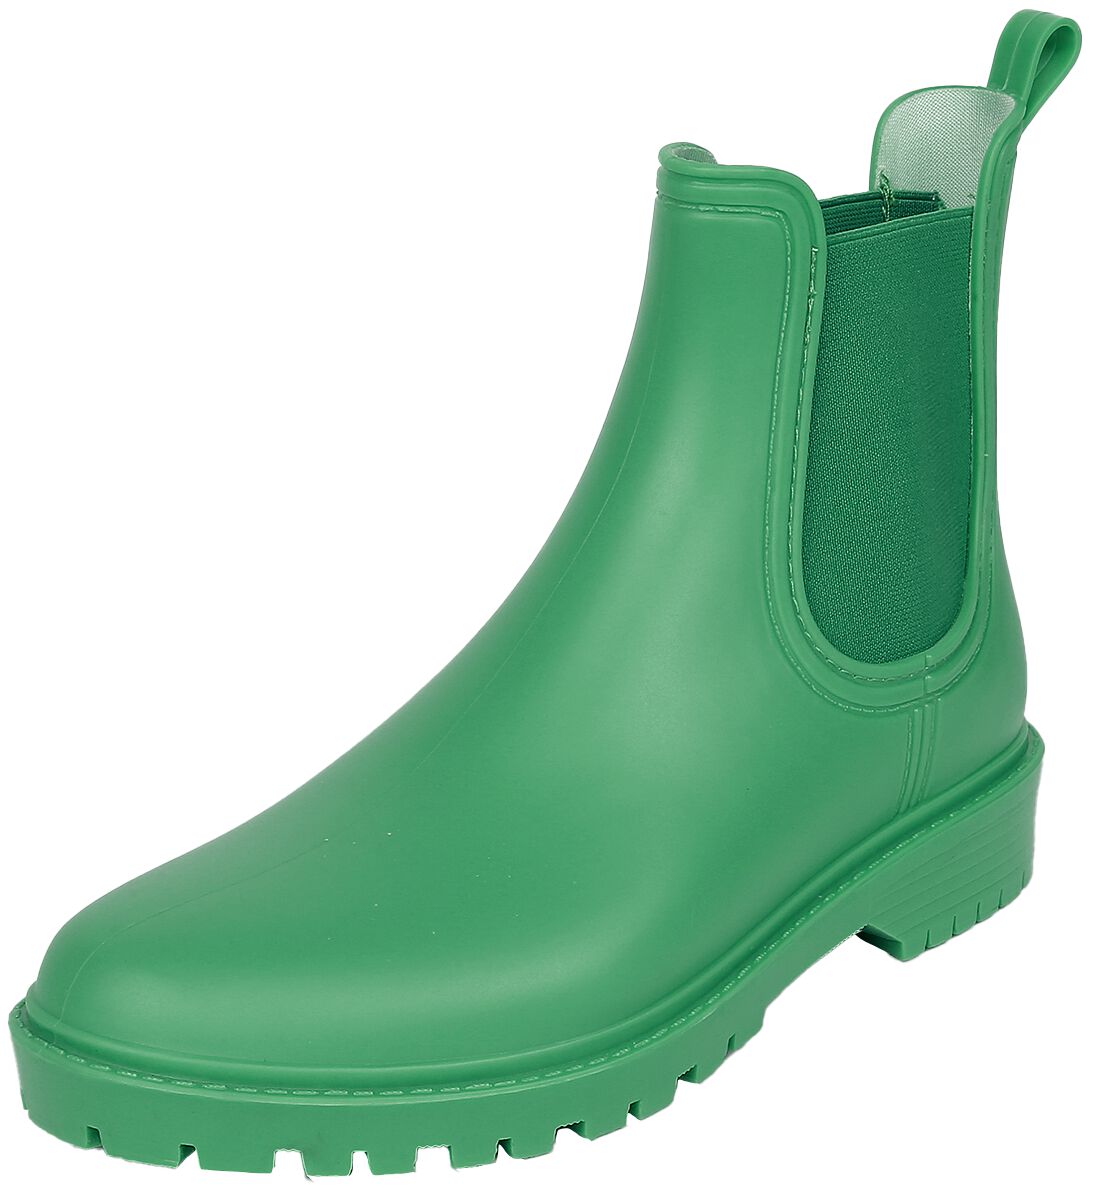 Dockers by Gerli Boots Gummistiefel grün in EU41